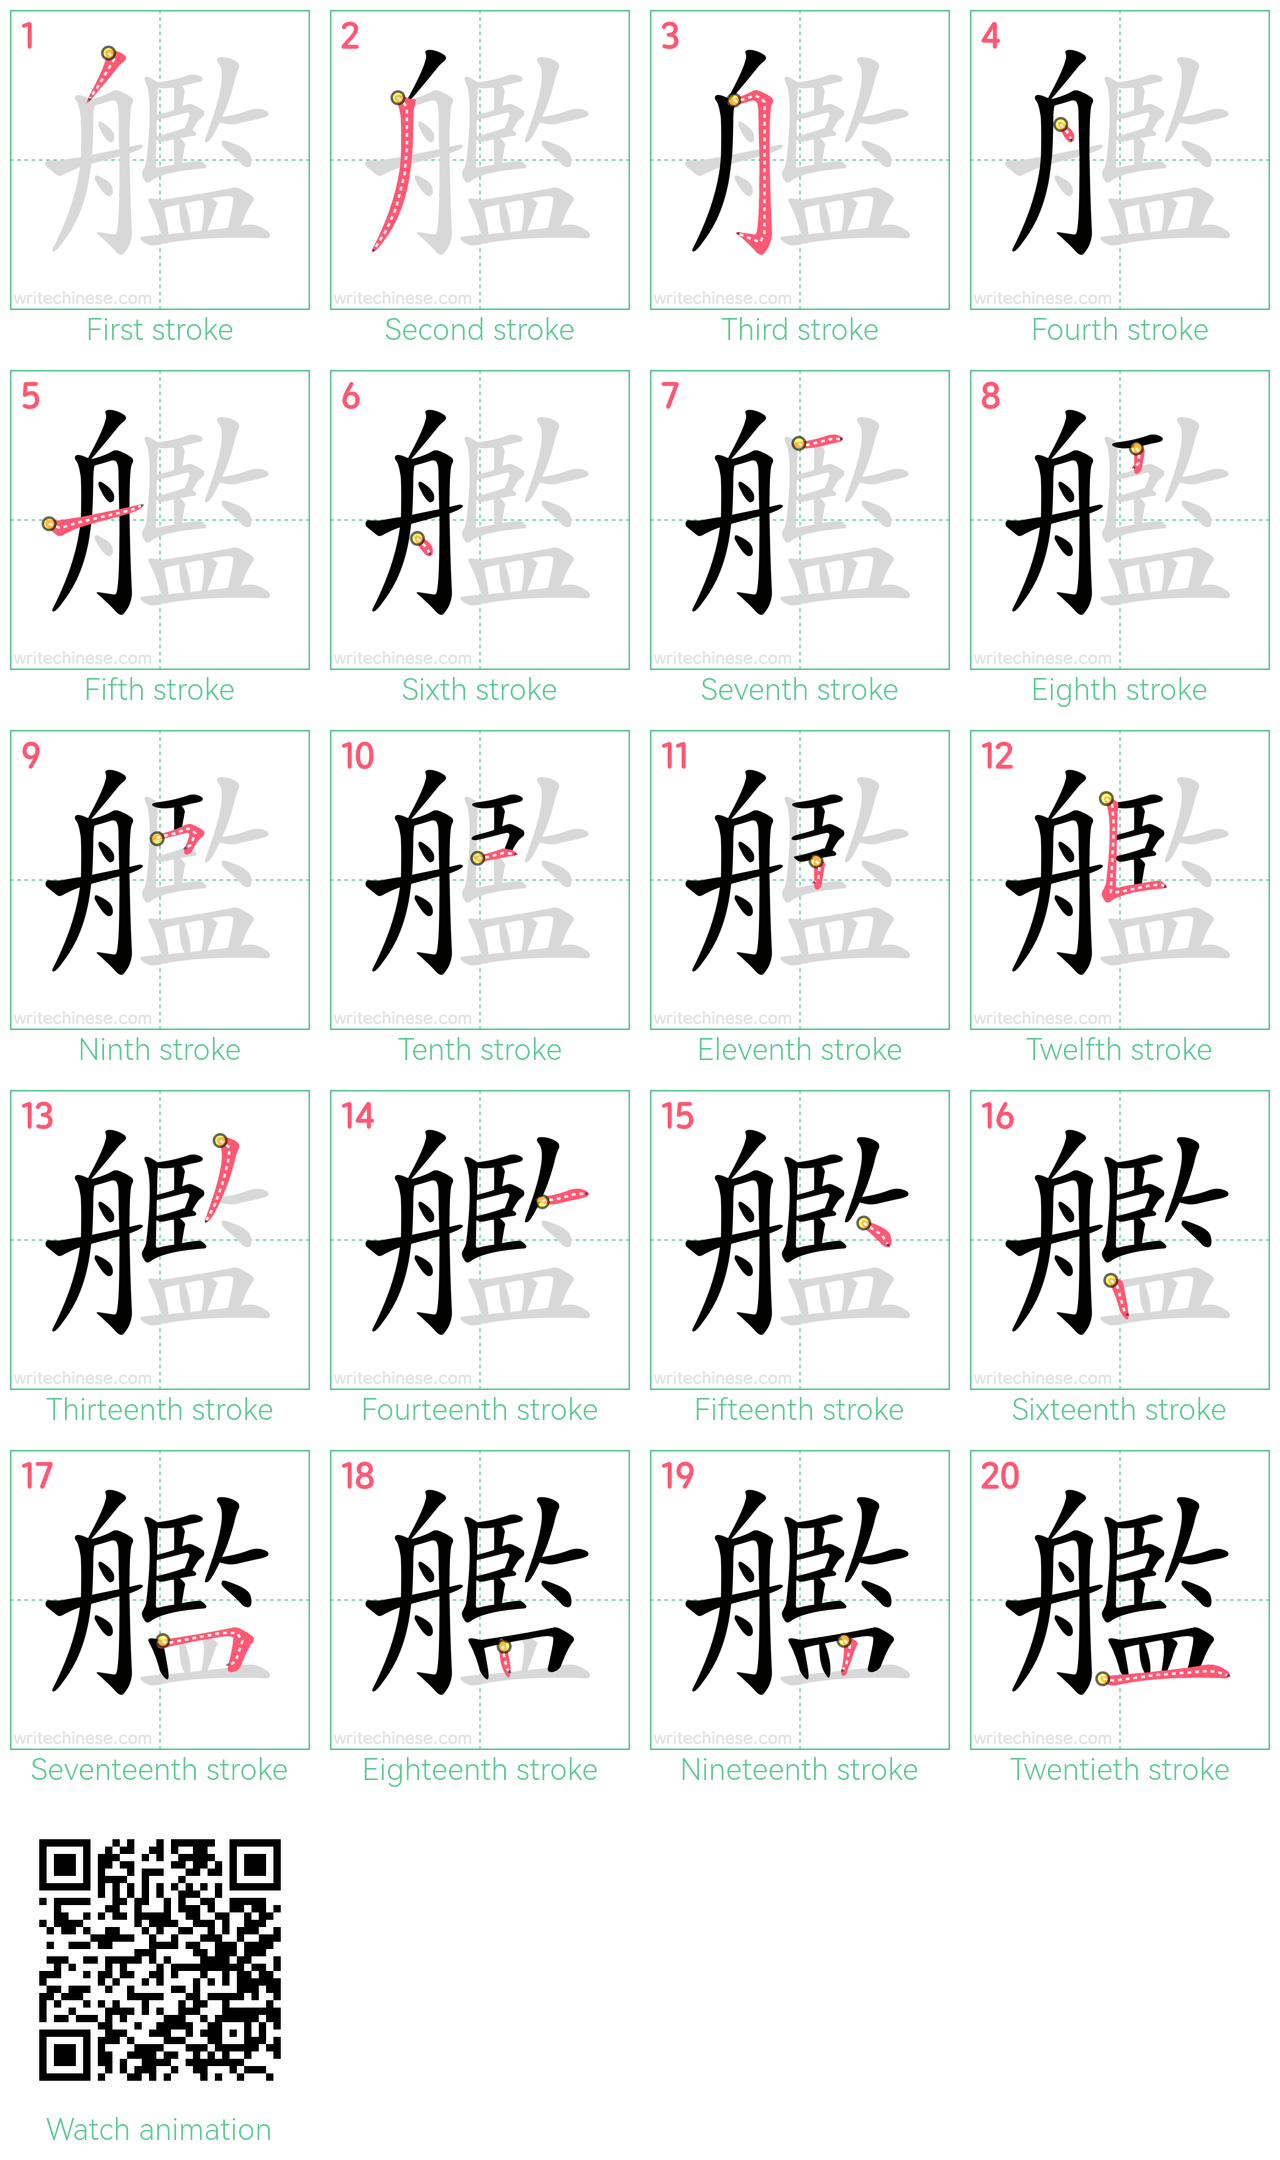 艦 step-by-step stroke order diagrams